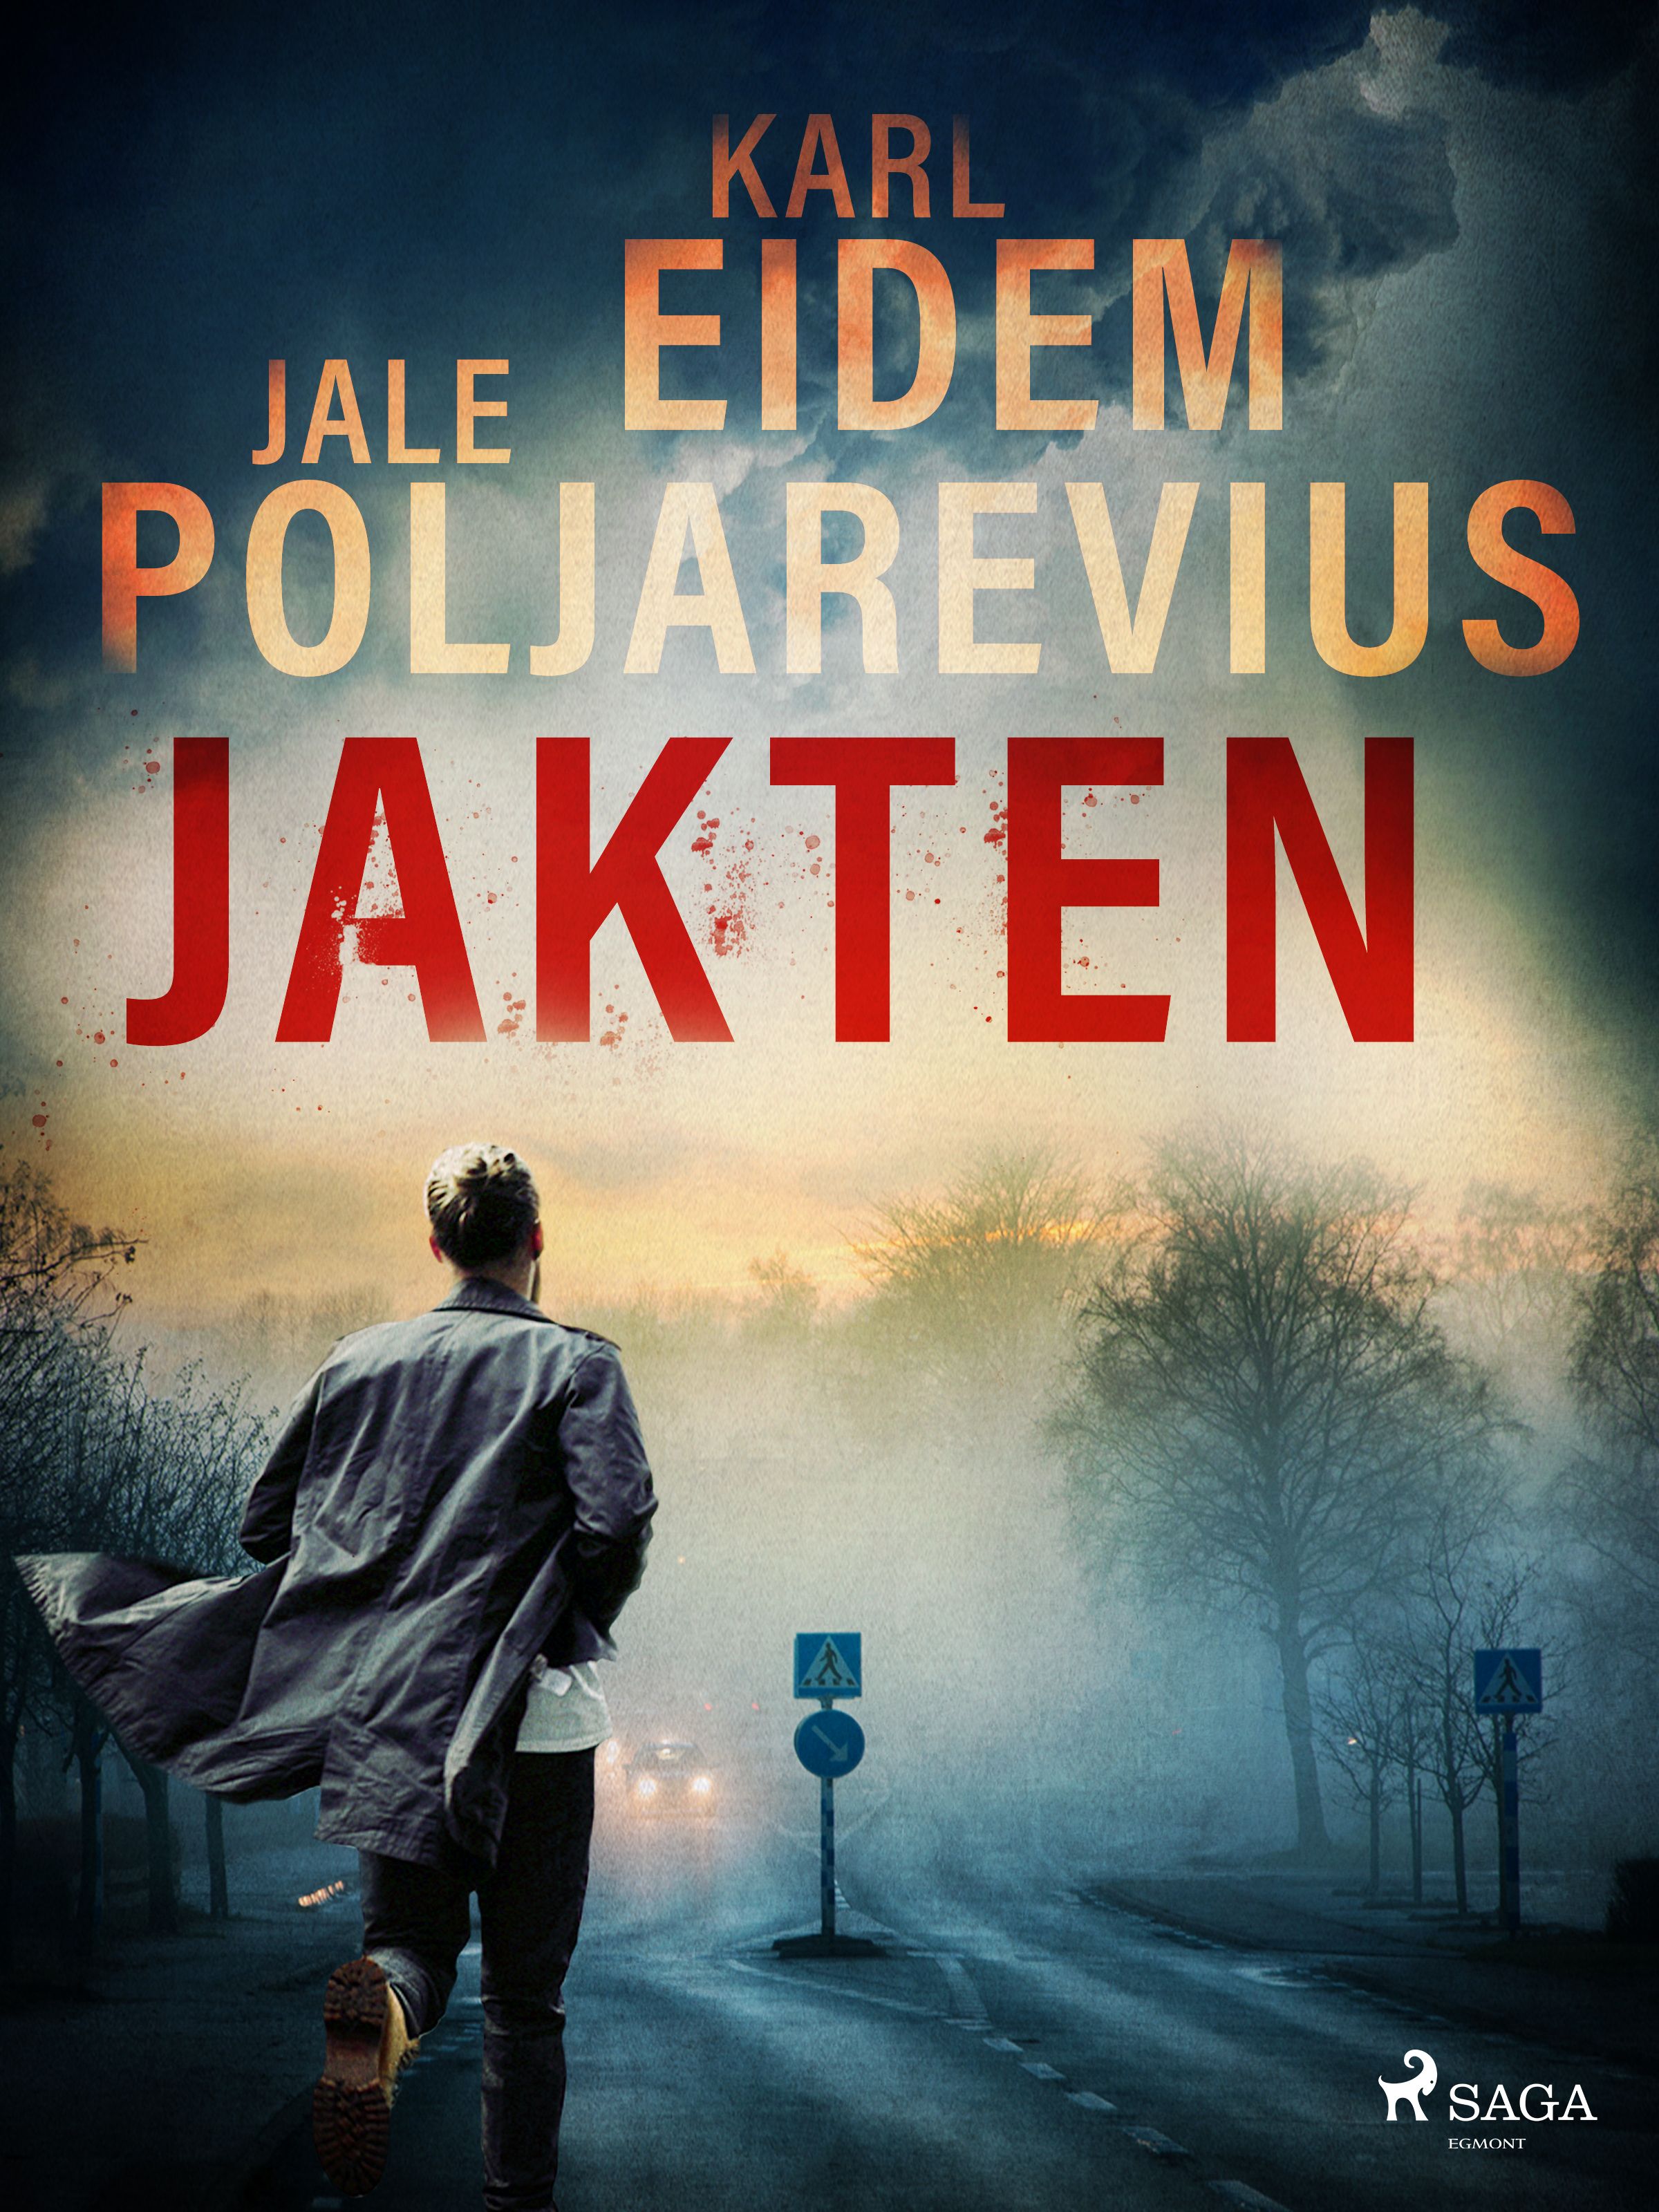 Jakten, e-bog af Karl Eidem, Jale Poljarevius